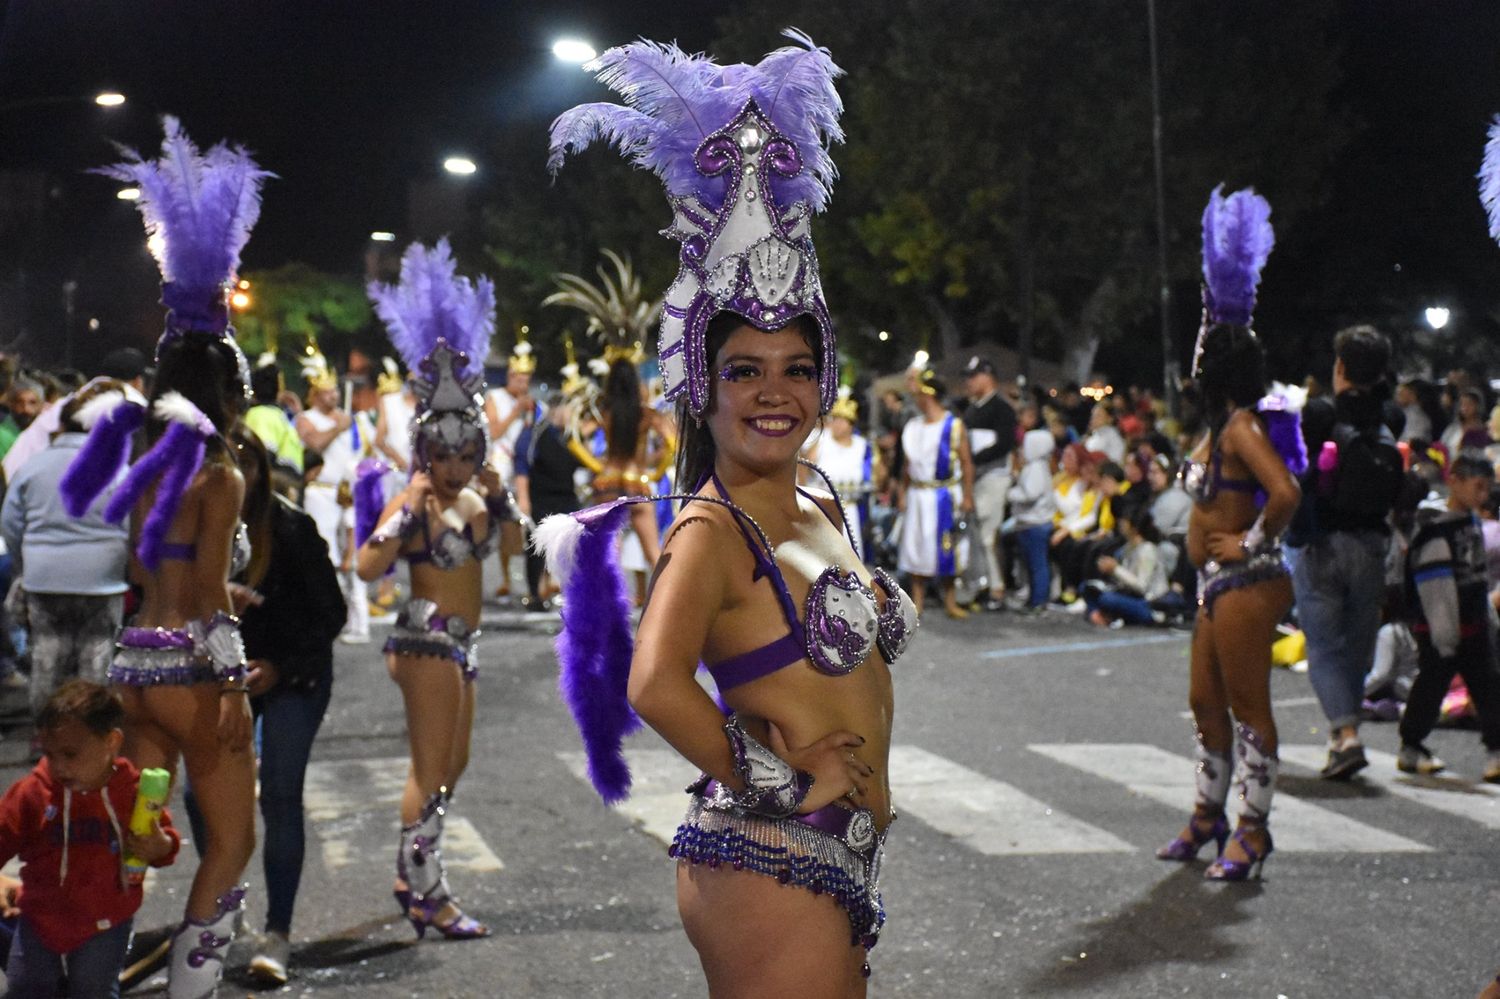 Hay carnaval en Chivilcoy: El municipio confirmó los corsos para febrero y marzo